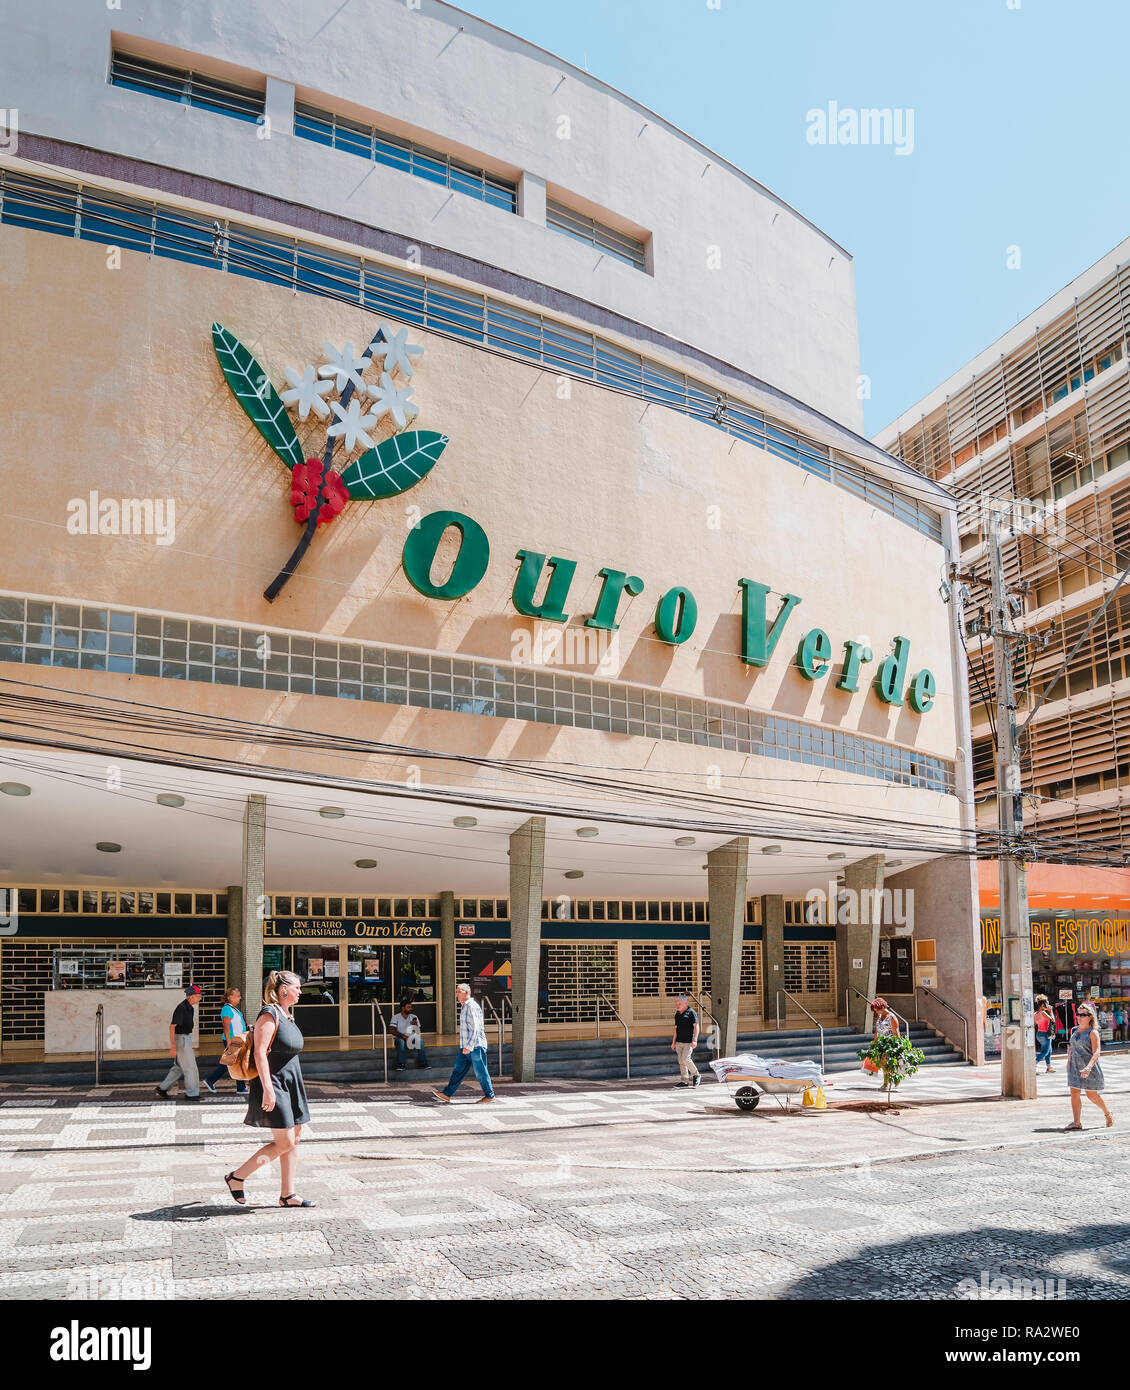 Londrina - PR, Brasil - Diciembre 12, 2018: cine y teatro llamado Cine Teatro Universitario Ouro Verde en el centro (calçadão de Londrina). Histórico Foto de stock